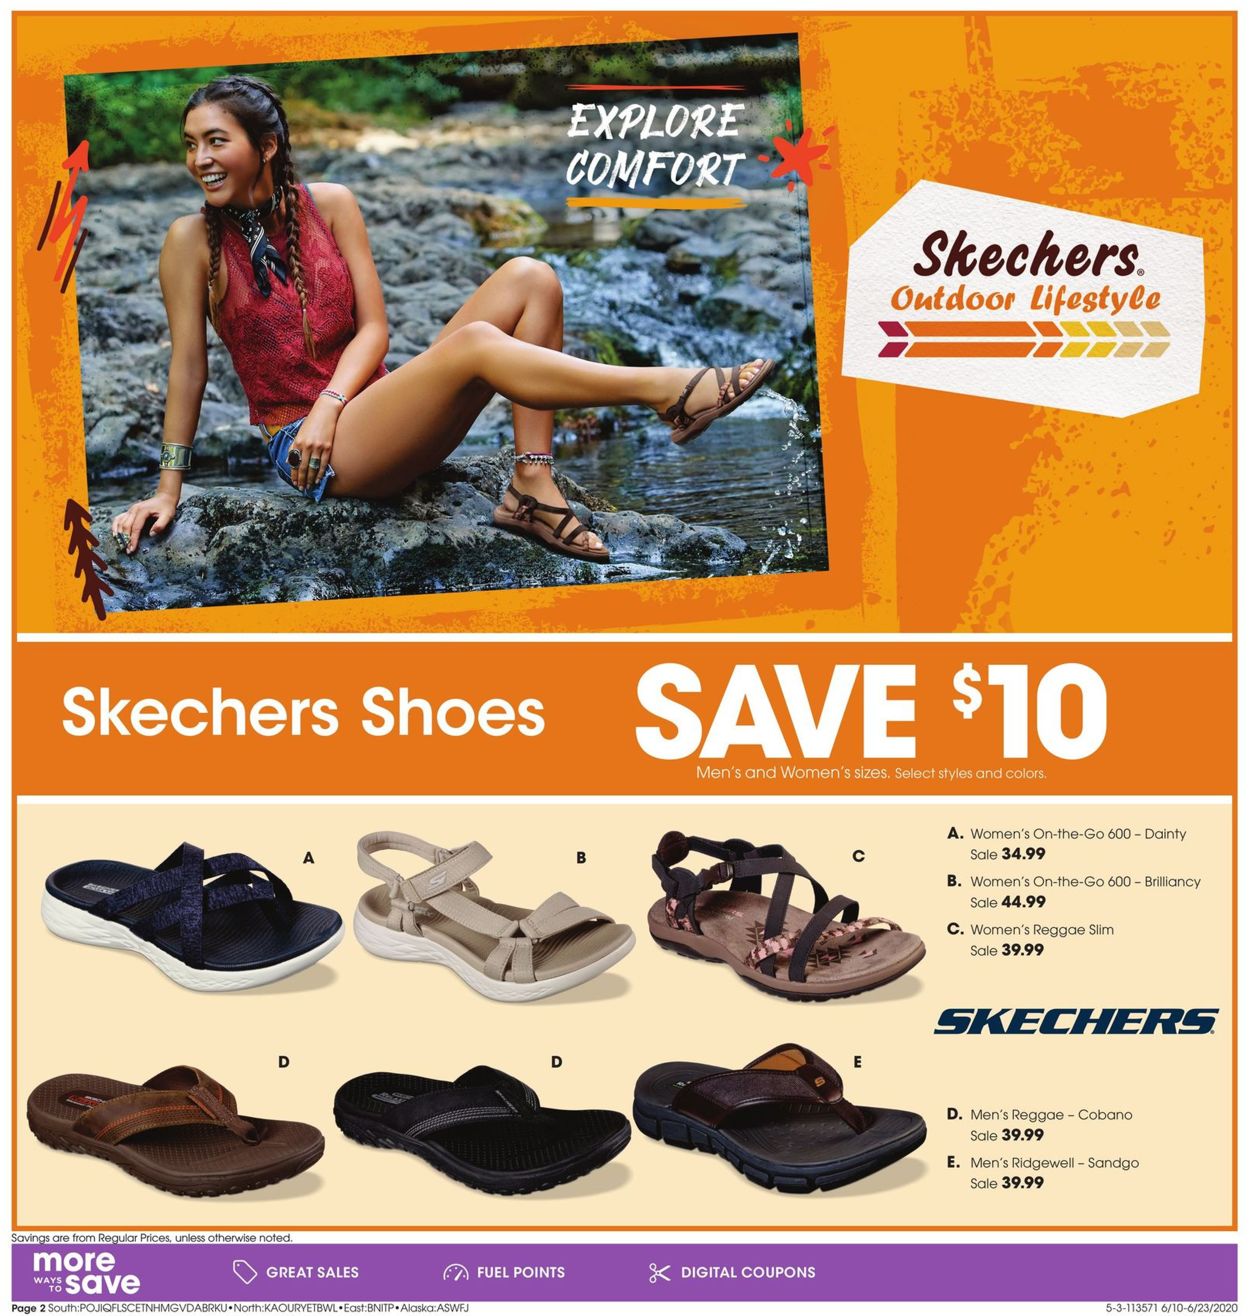 skechers shoe styles